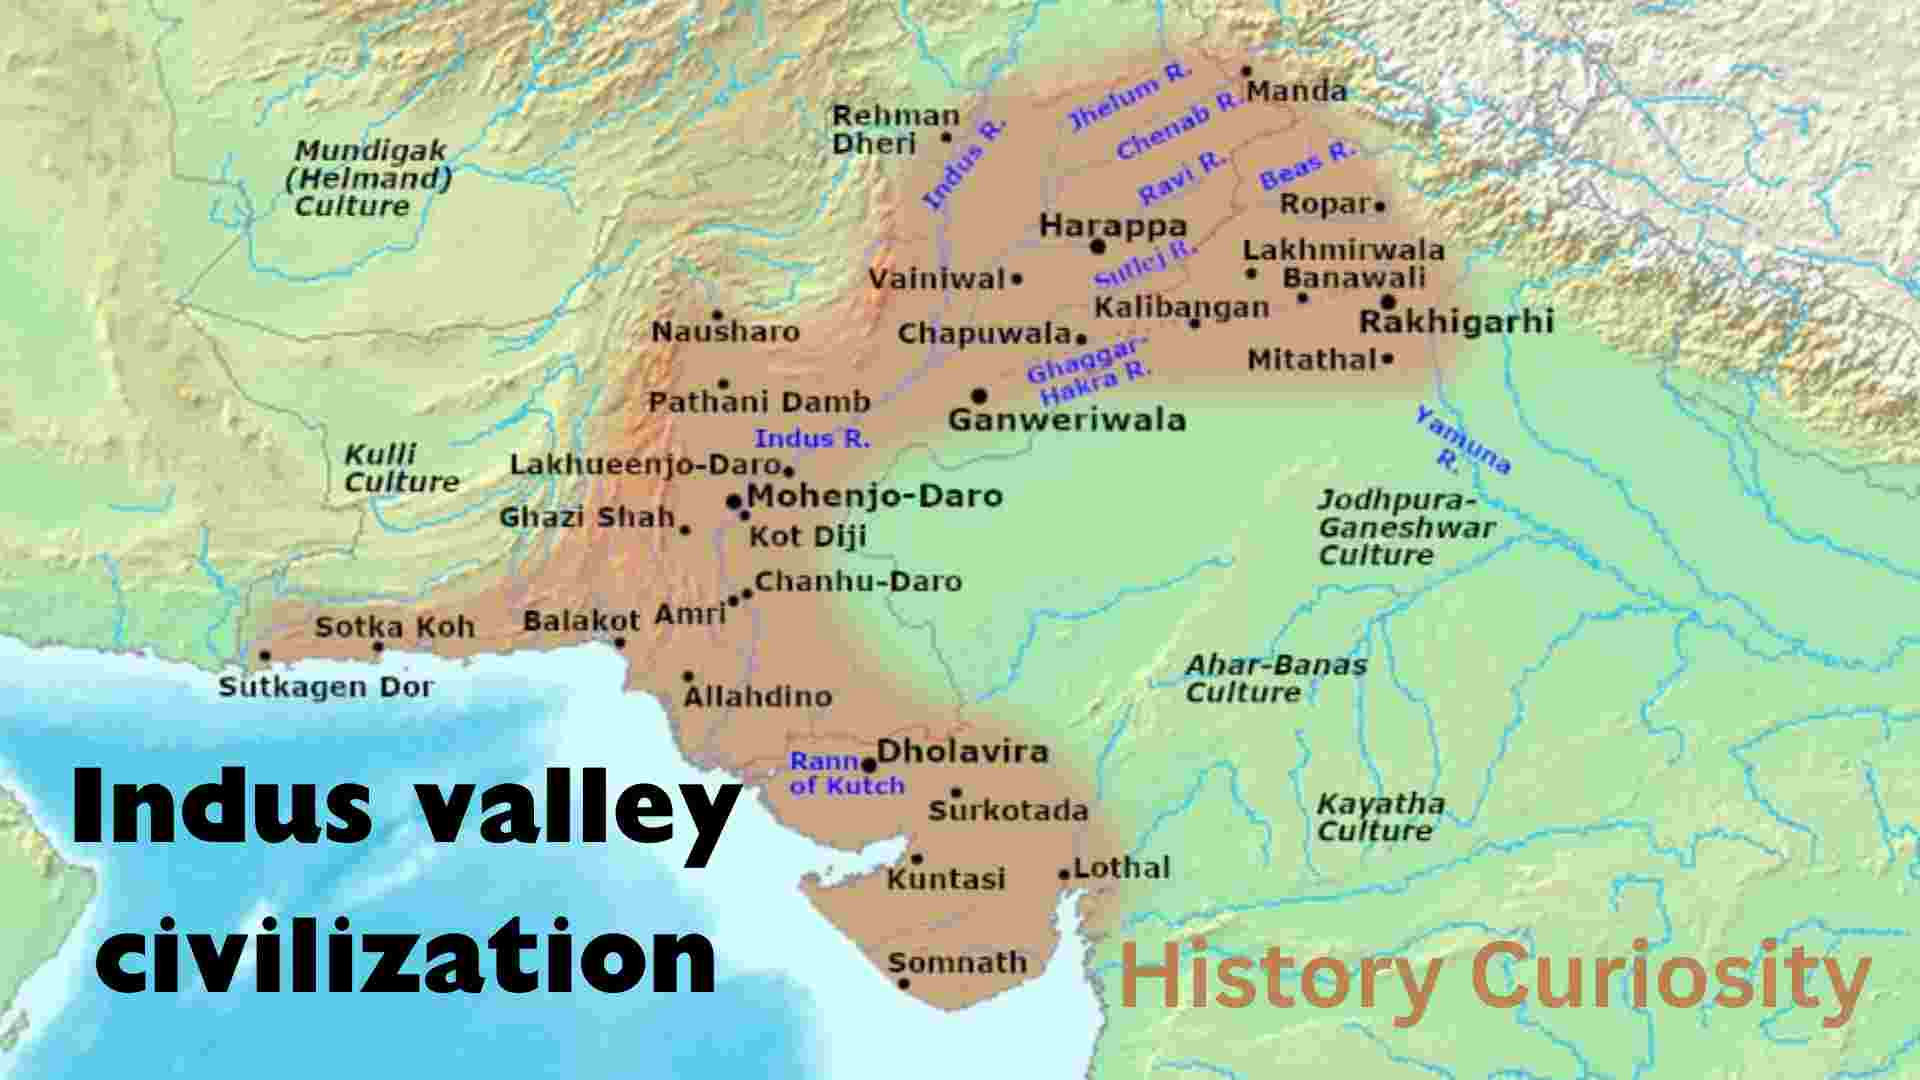 Indus valley civilization